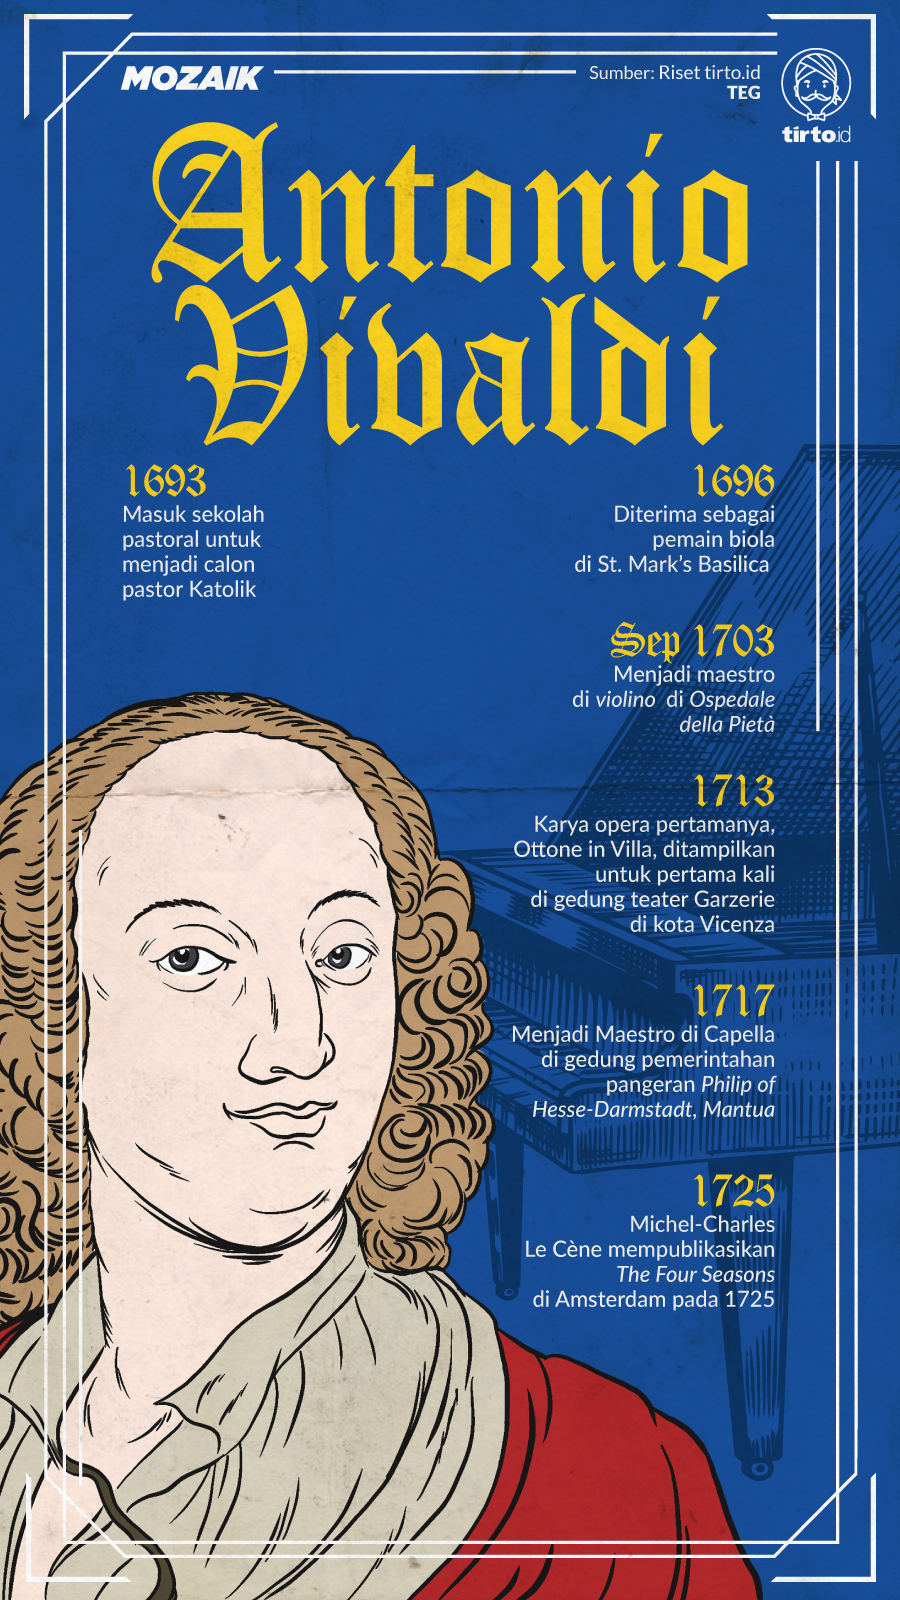 Infografik Mozaik Antonio Vivaldi